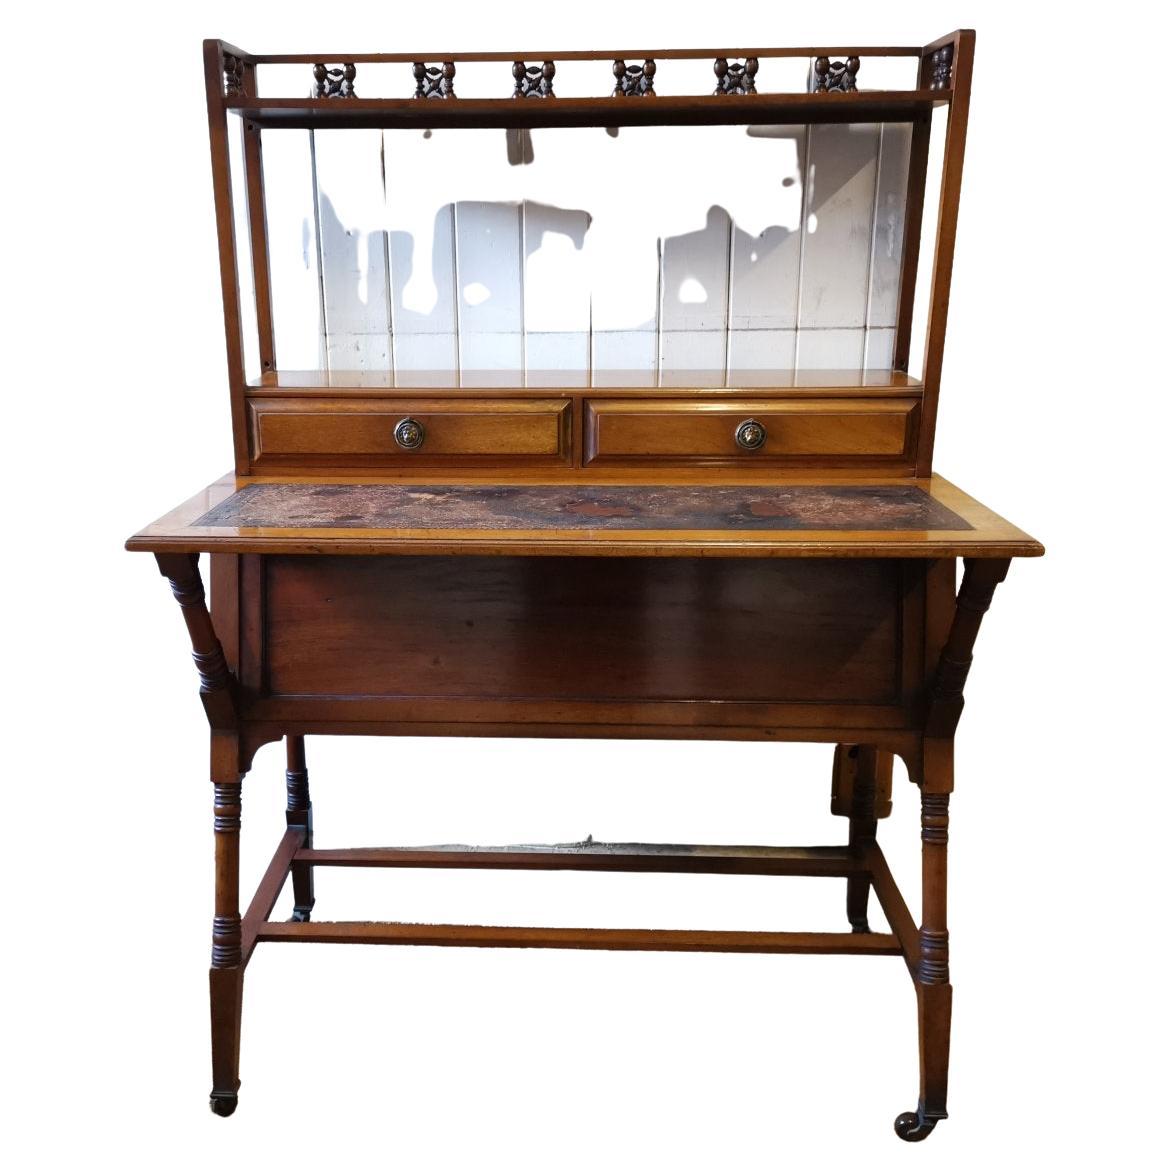 Liberty & Co Ein maurischer Schreibtisch aus Nussbaumholz mit kantigem Design und 4 gegenüberliegenden Seitenschubladen